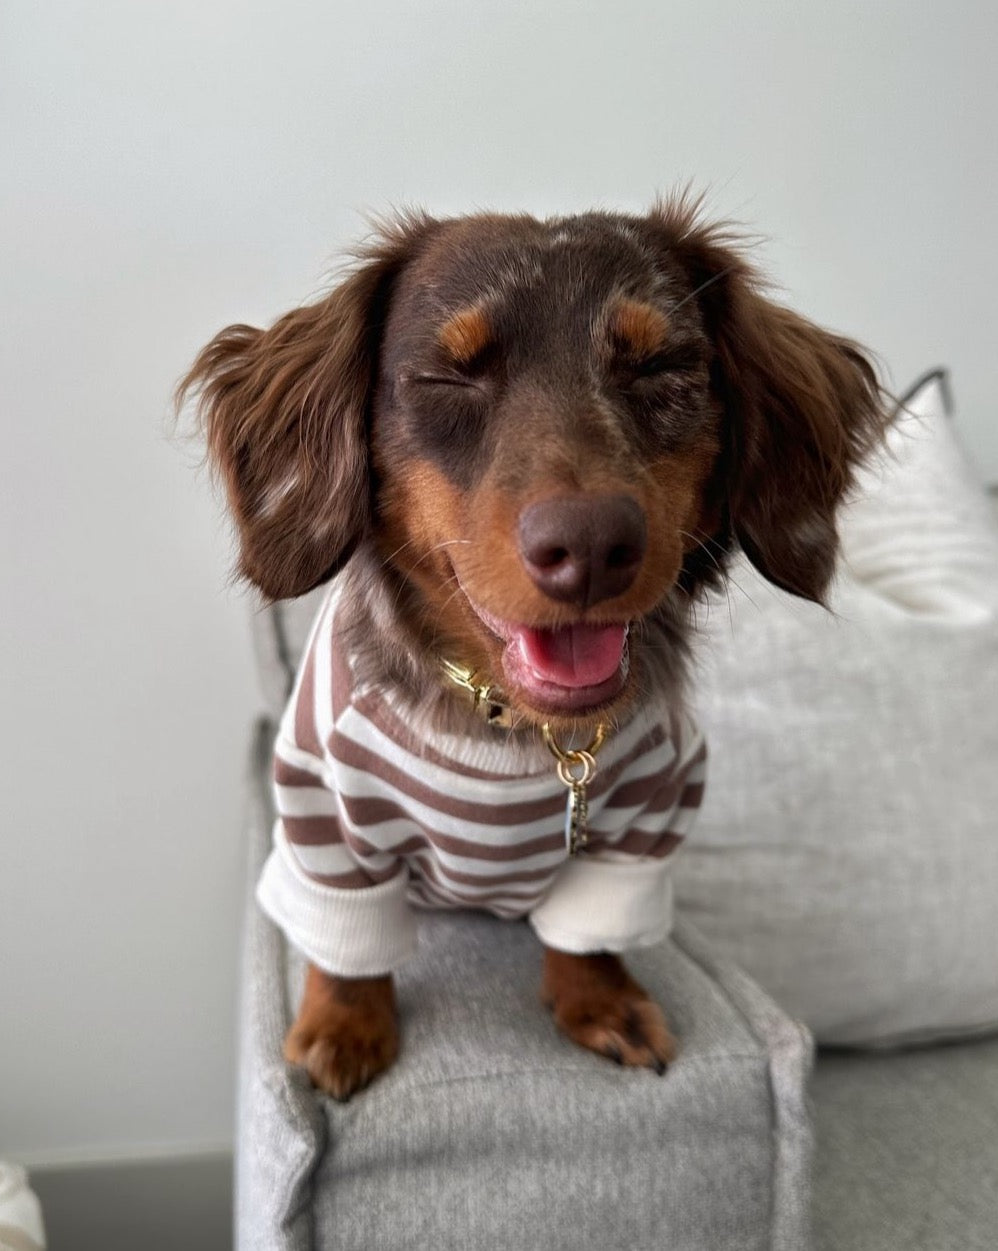 Camden Brown Striped Dog Sweatshirt